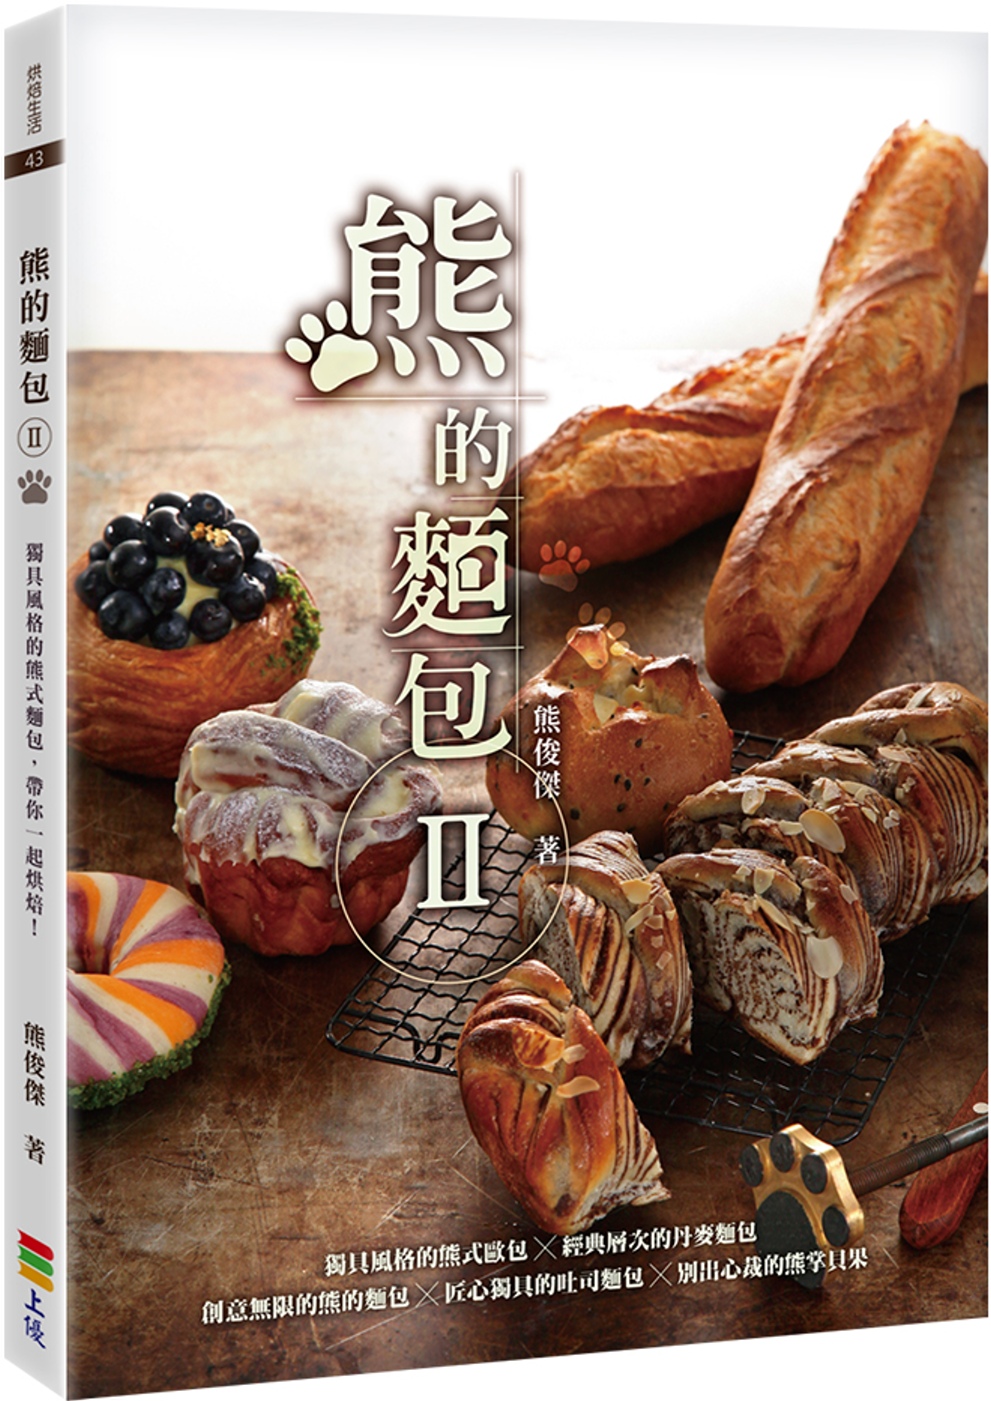 熊的麵包Ⅱ (親簽版+贈品)(限台灣)